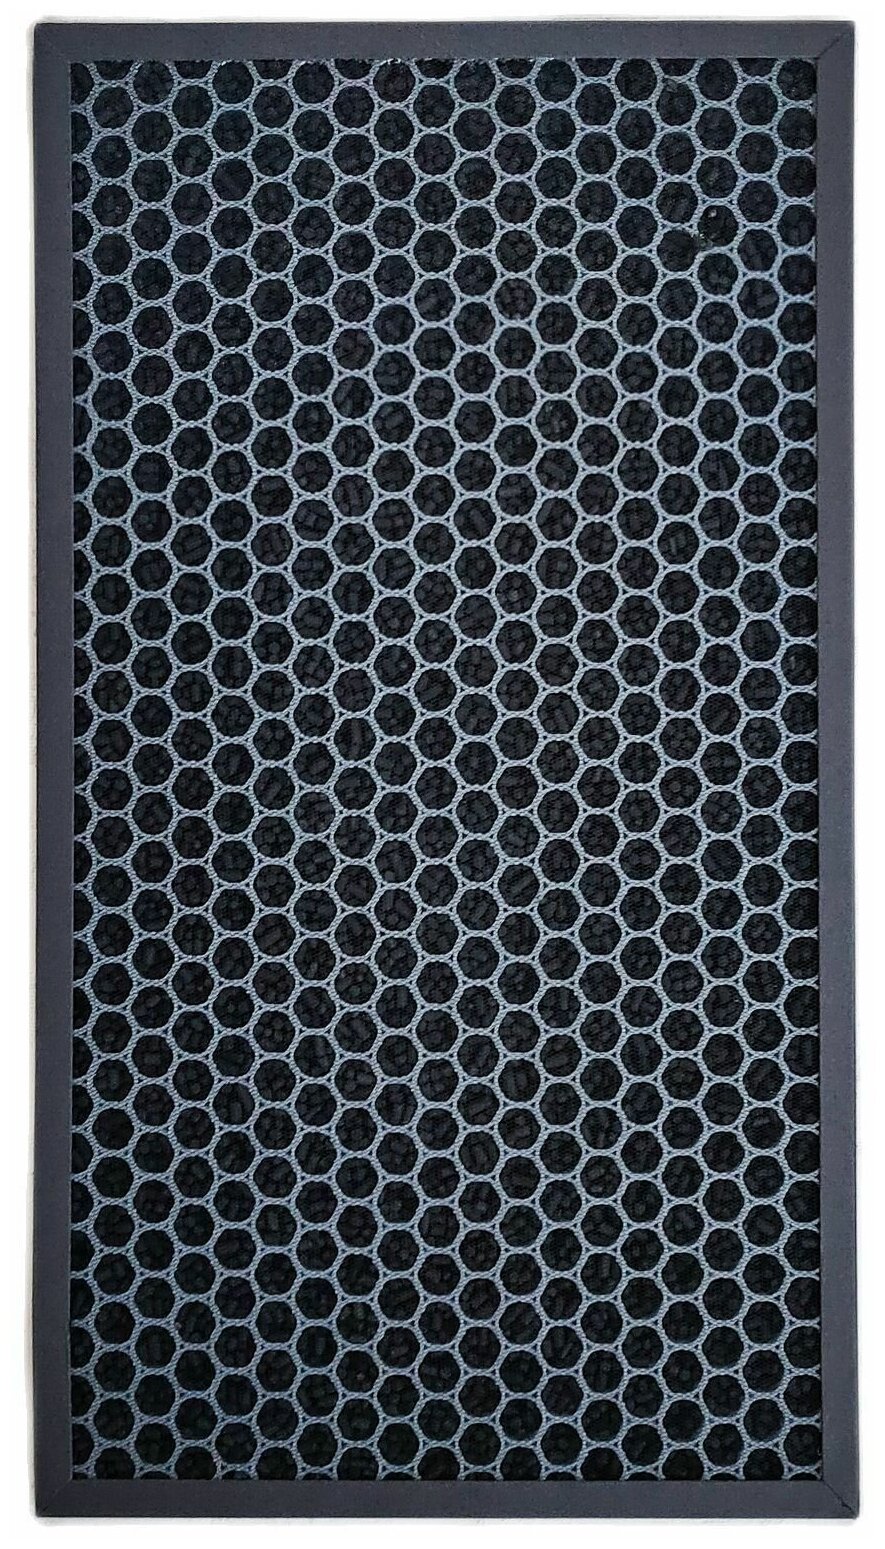 Угольный фильтр соответствует FZ-E75DF для очистителя воздуха Sharp KI-GX75, KI-HX75, KI-JX75, KI-LX75, KI-NX75